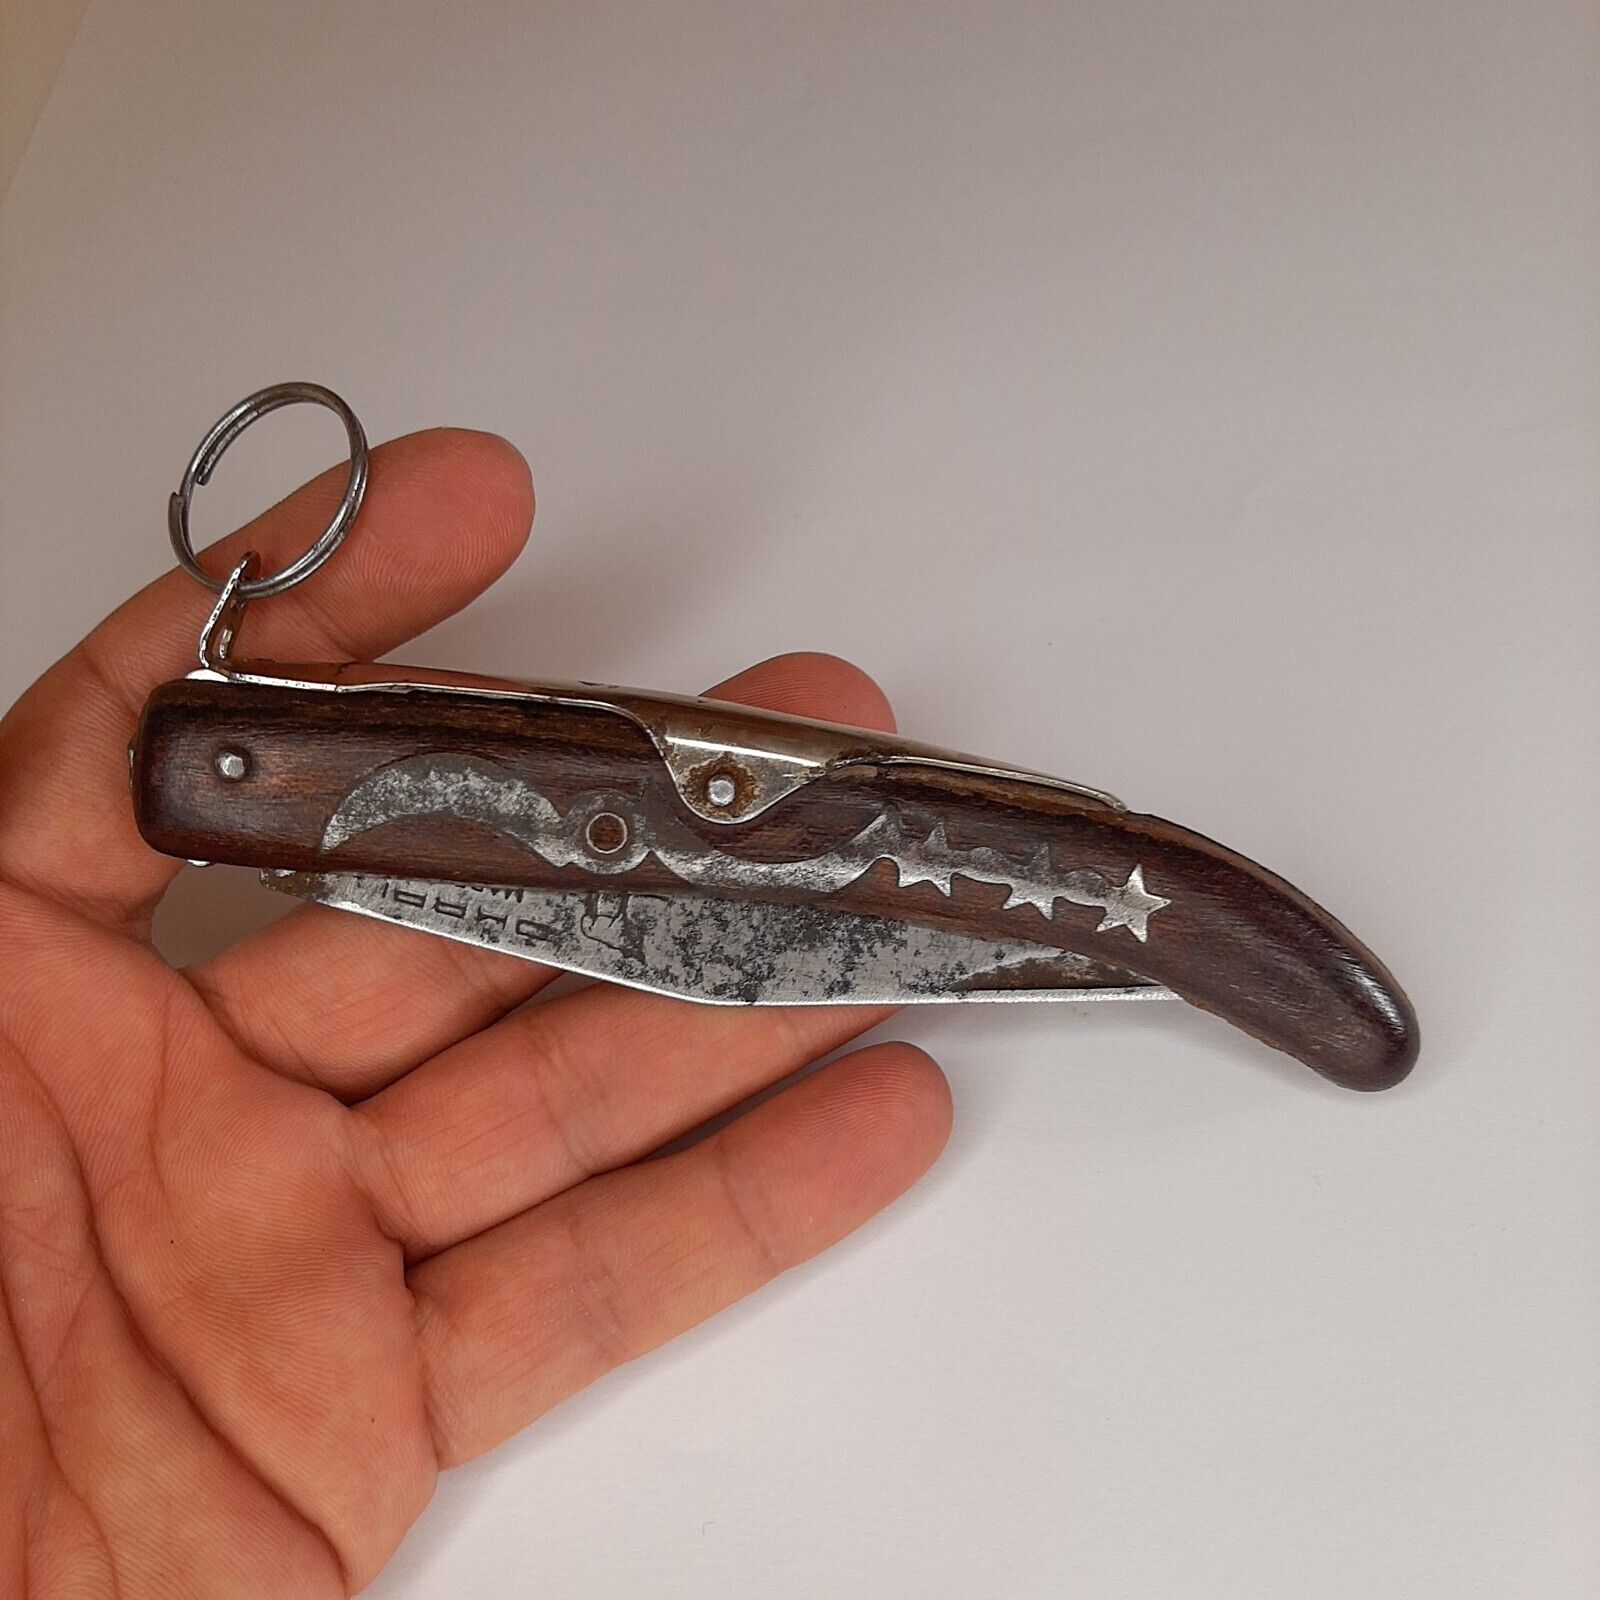 RARE Original Vintage  okapi knife made in south Africa